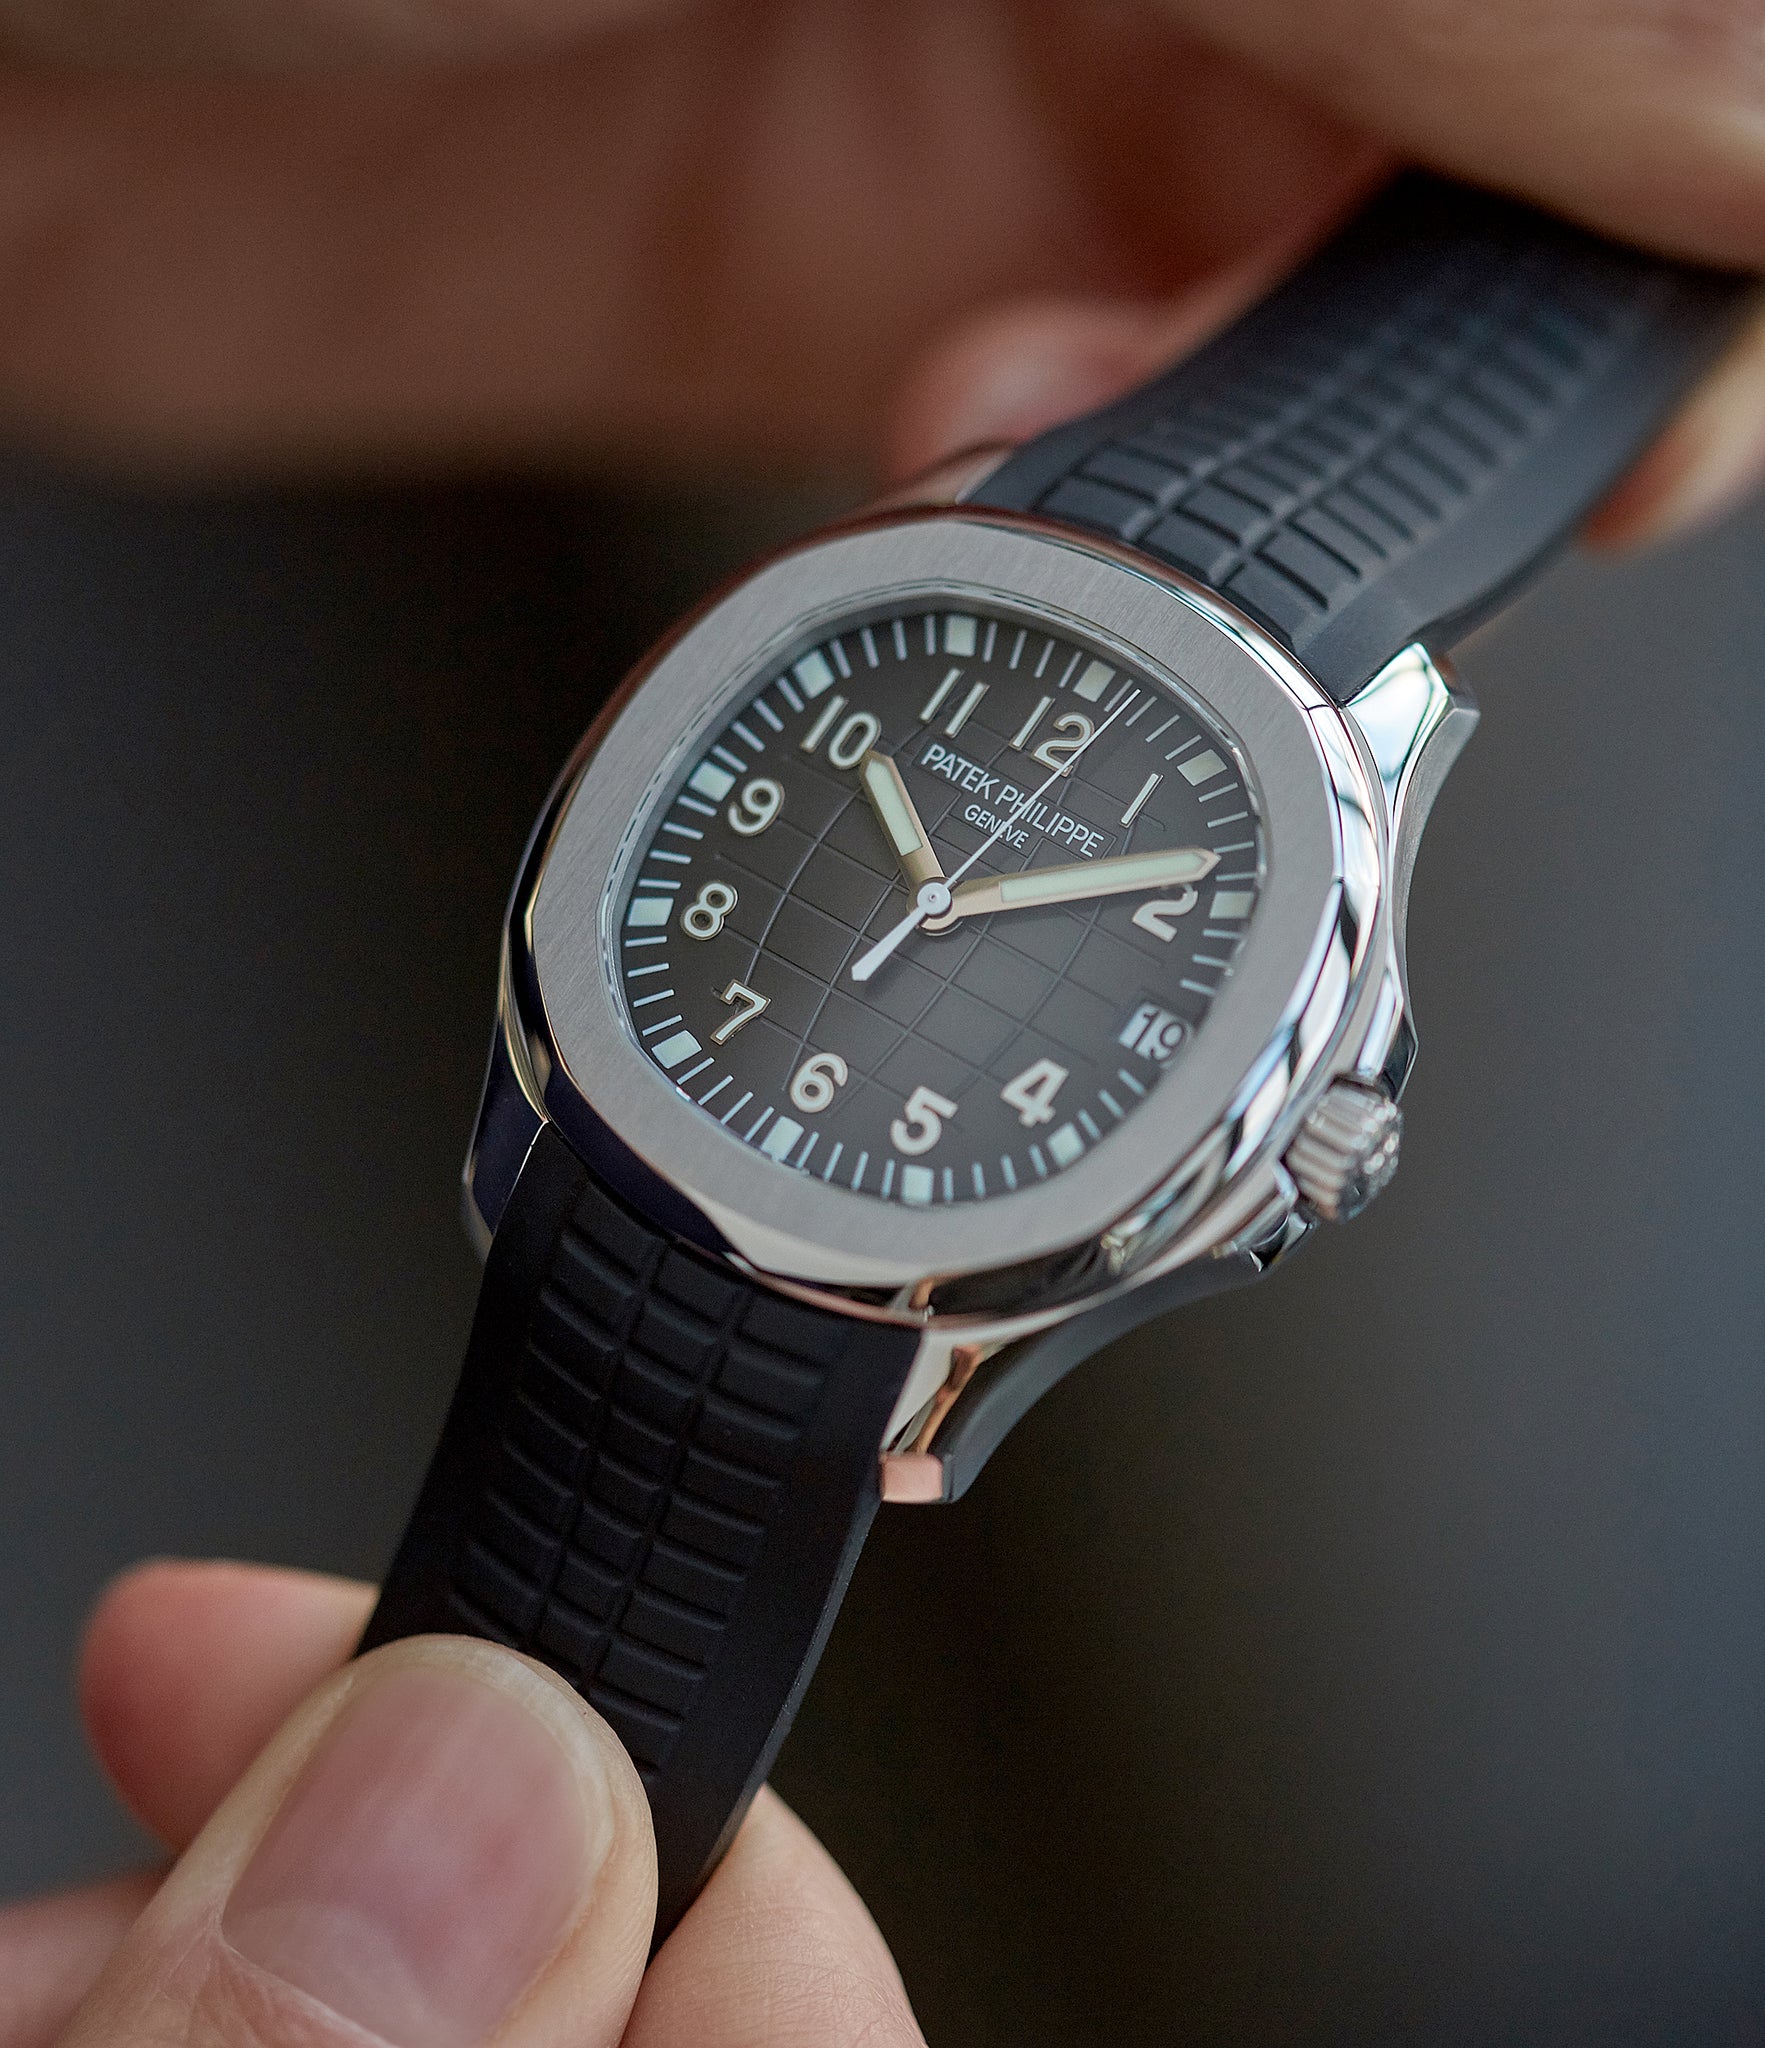 Patek Philippe Aquanaut 5165A-001 watch | Buy Patek Philippe Aquanaut ...